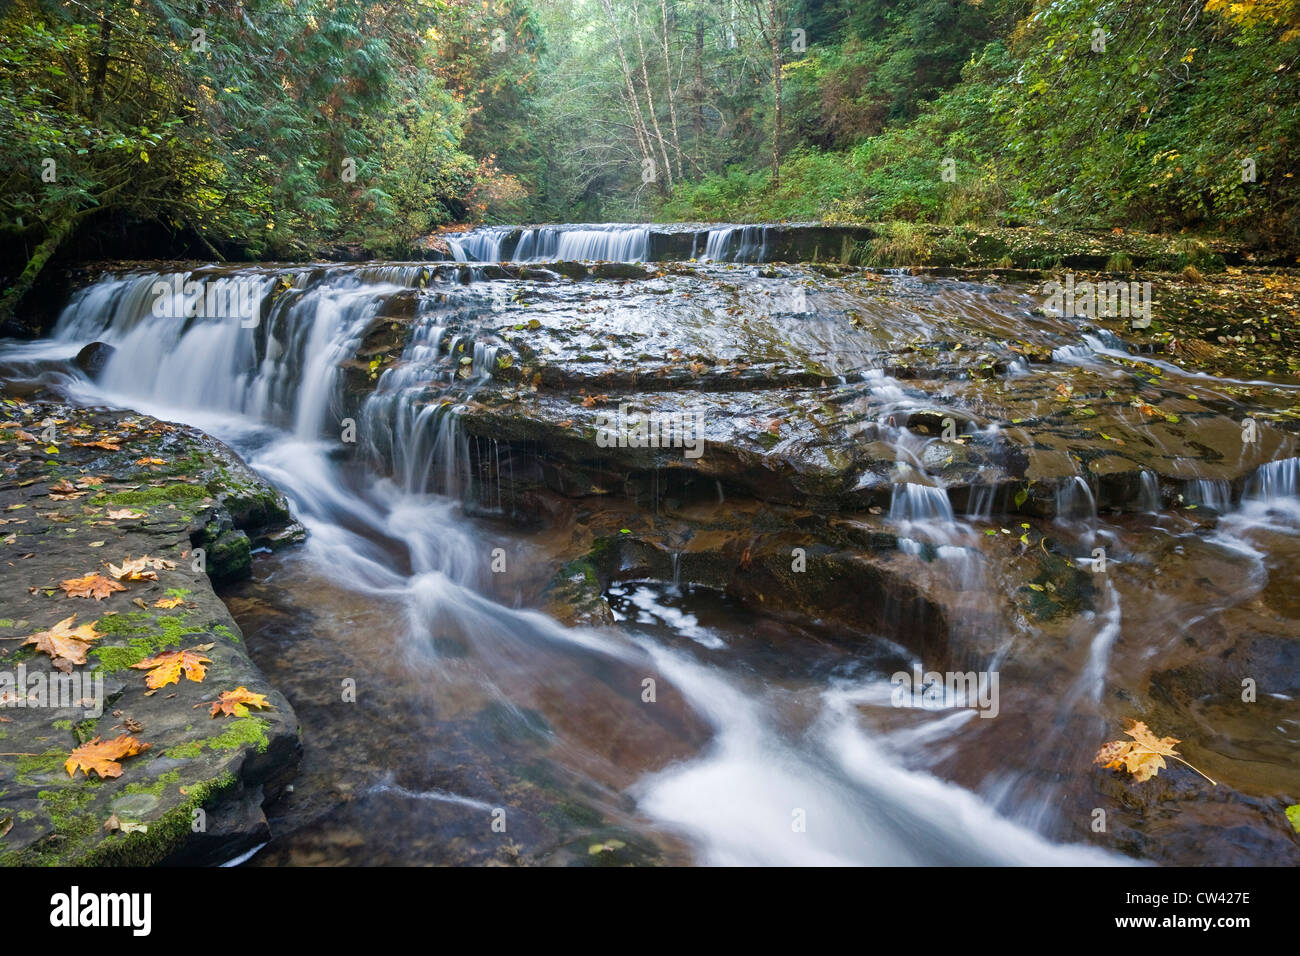 Cascade dans une forêt, Sweet Creek Falls, Oregon, USA Banque D'Images